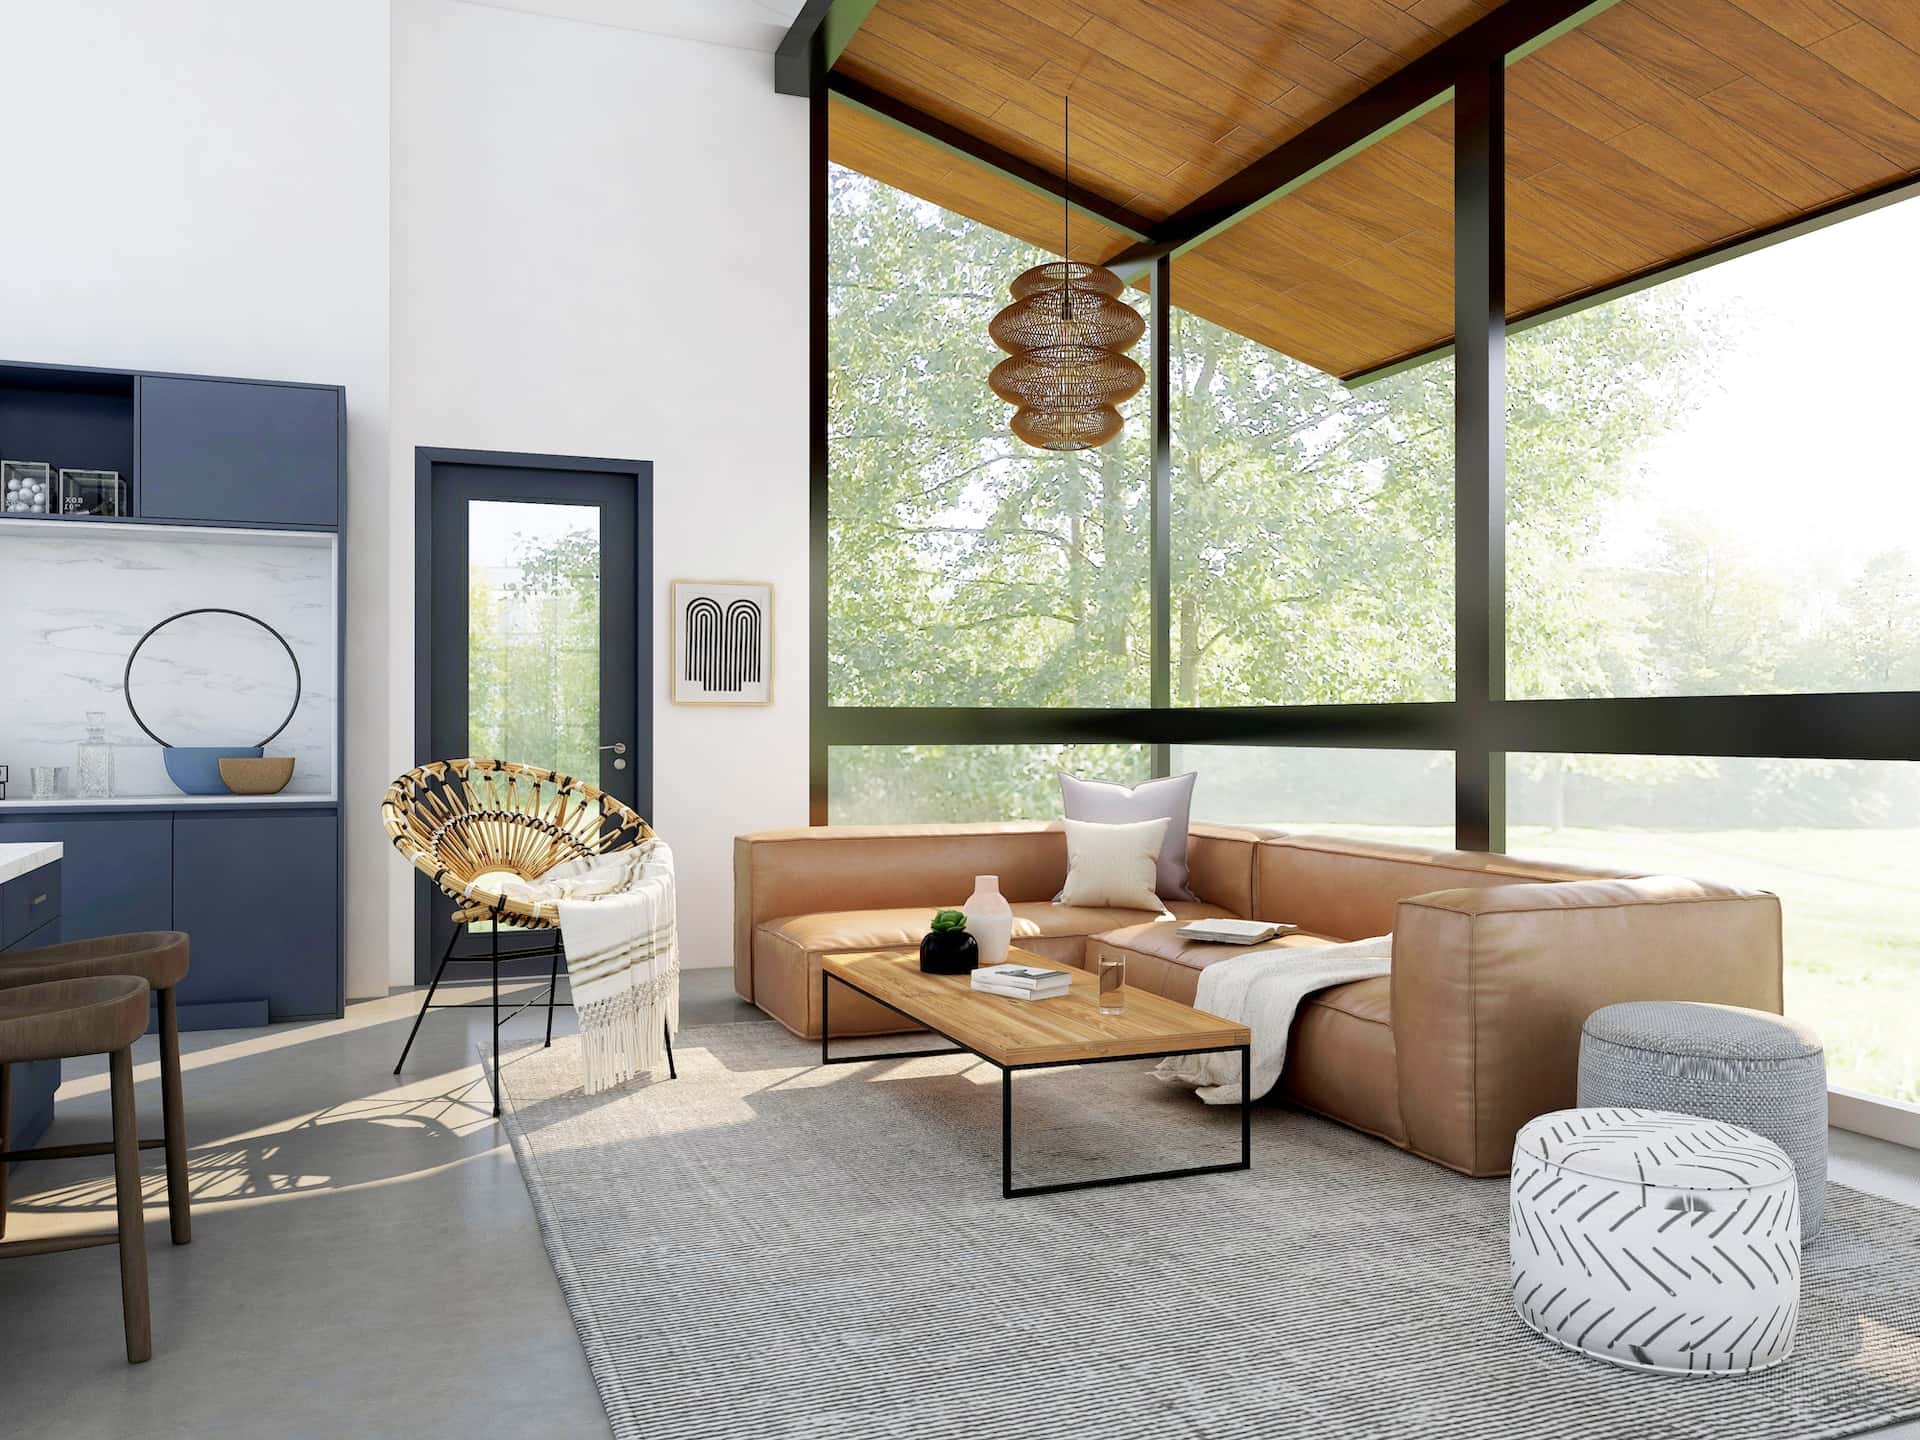 bungalow window interior design ideas - Gebruik deze 25 luxe bungalow-interieurontwerpideeën om uw ruimte naar een hoger niveau te tillen